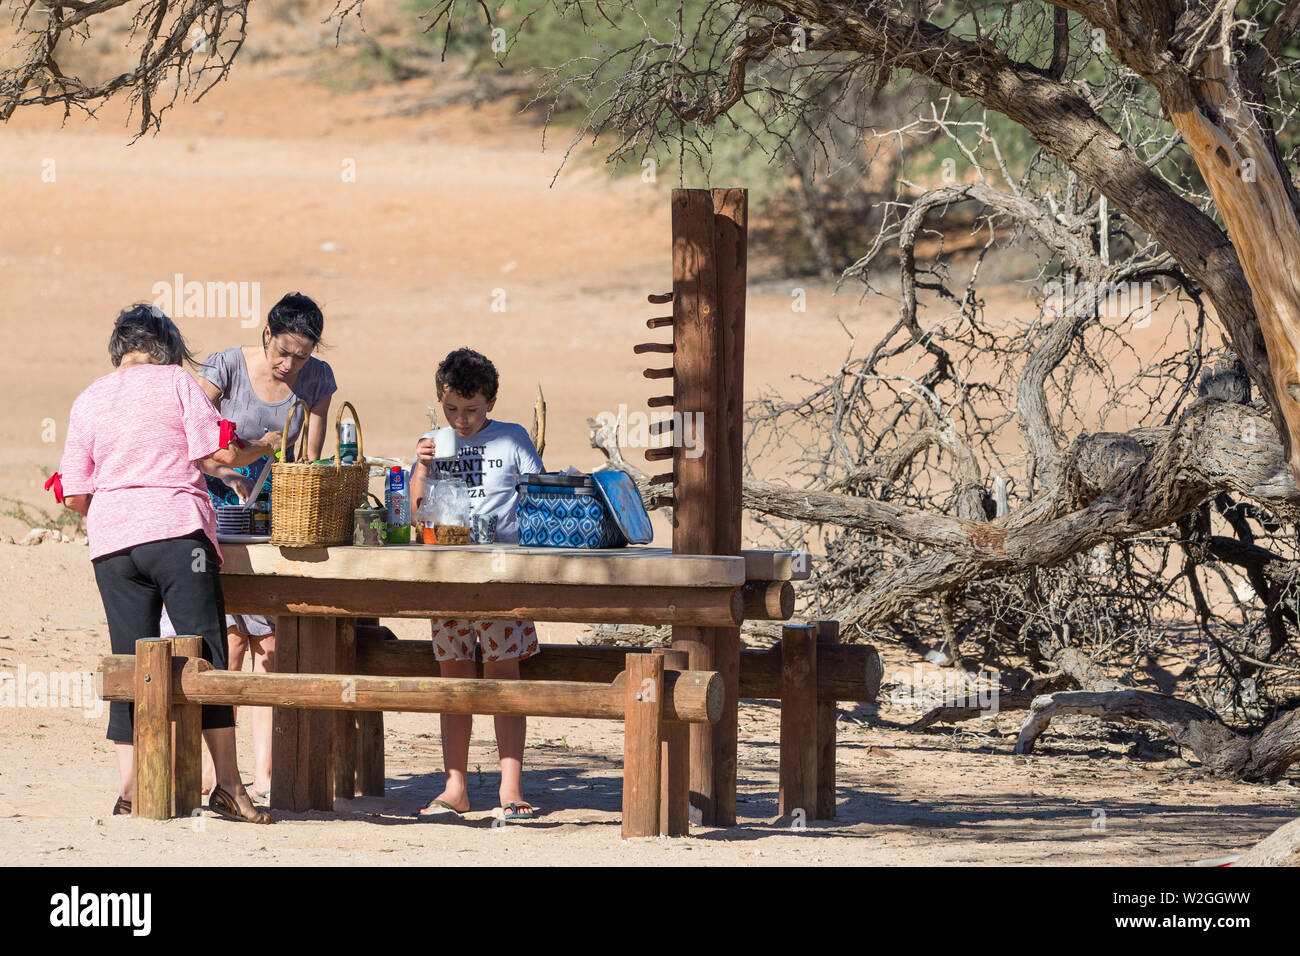 Gruppo di famiglia in un banco di legno tabella preparare un pasto ad un picnic o sito di riposo in ambiente desertico Kgalagadi Parco transfrontaliero, Sud Africa Foto Stock